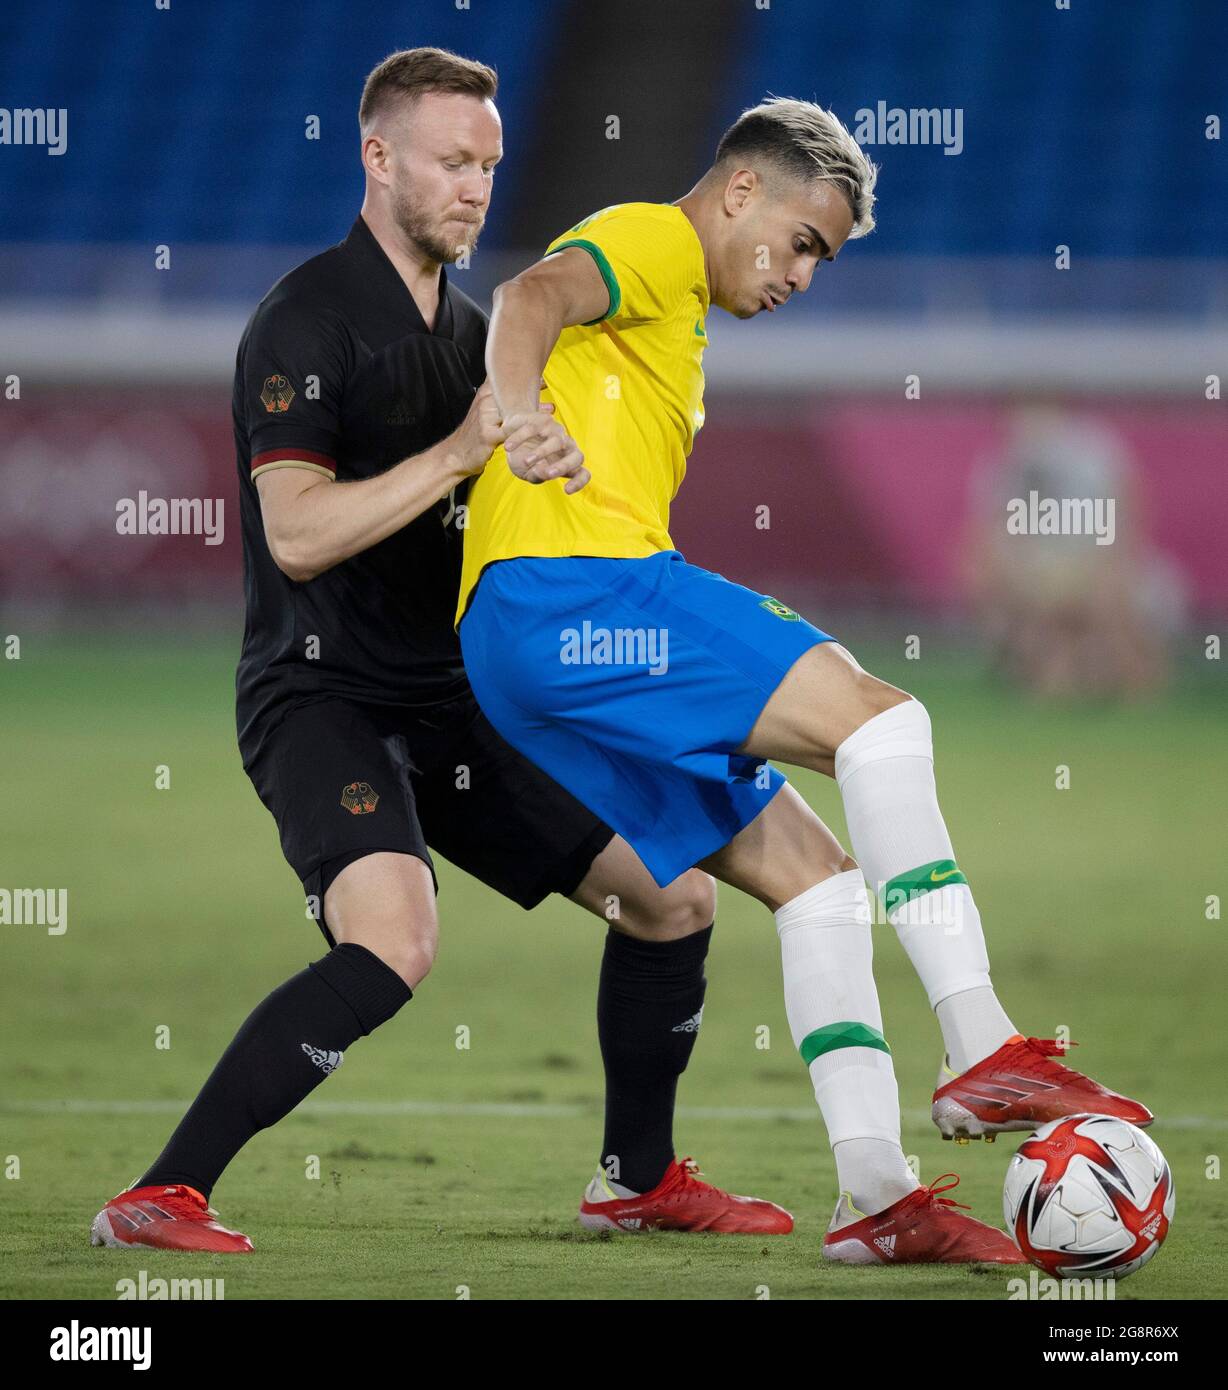 Brazil vs germany 2021